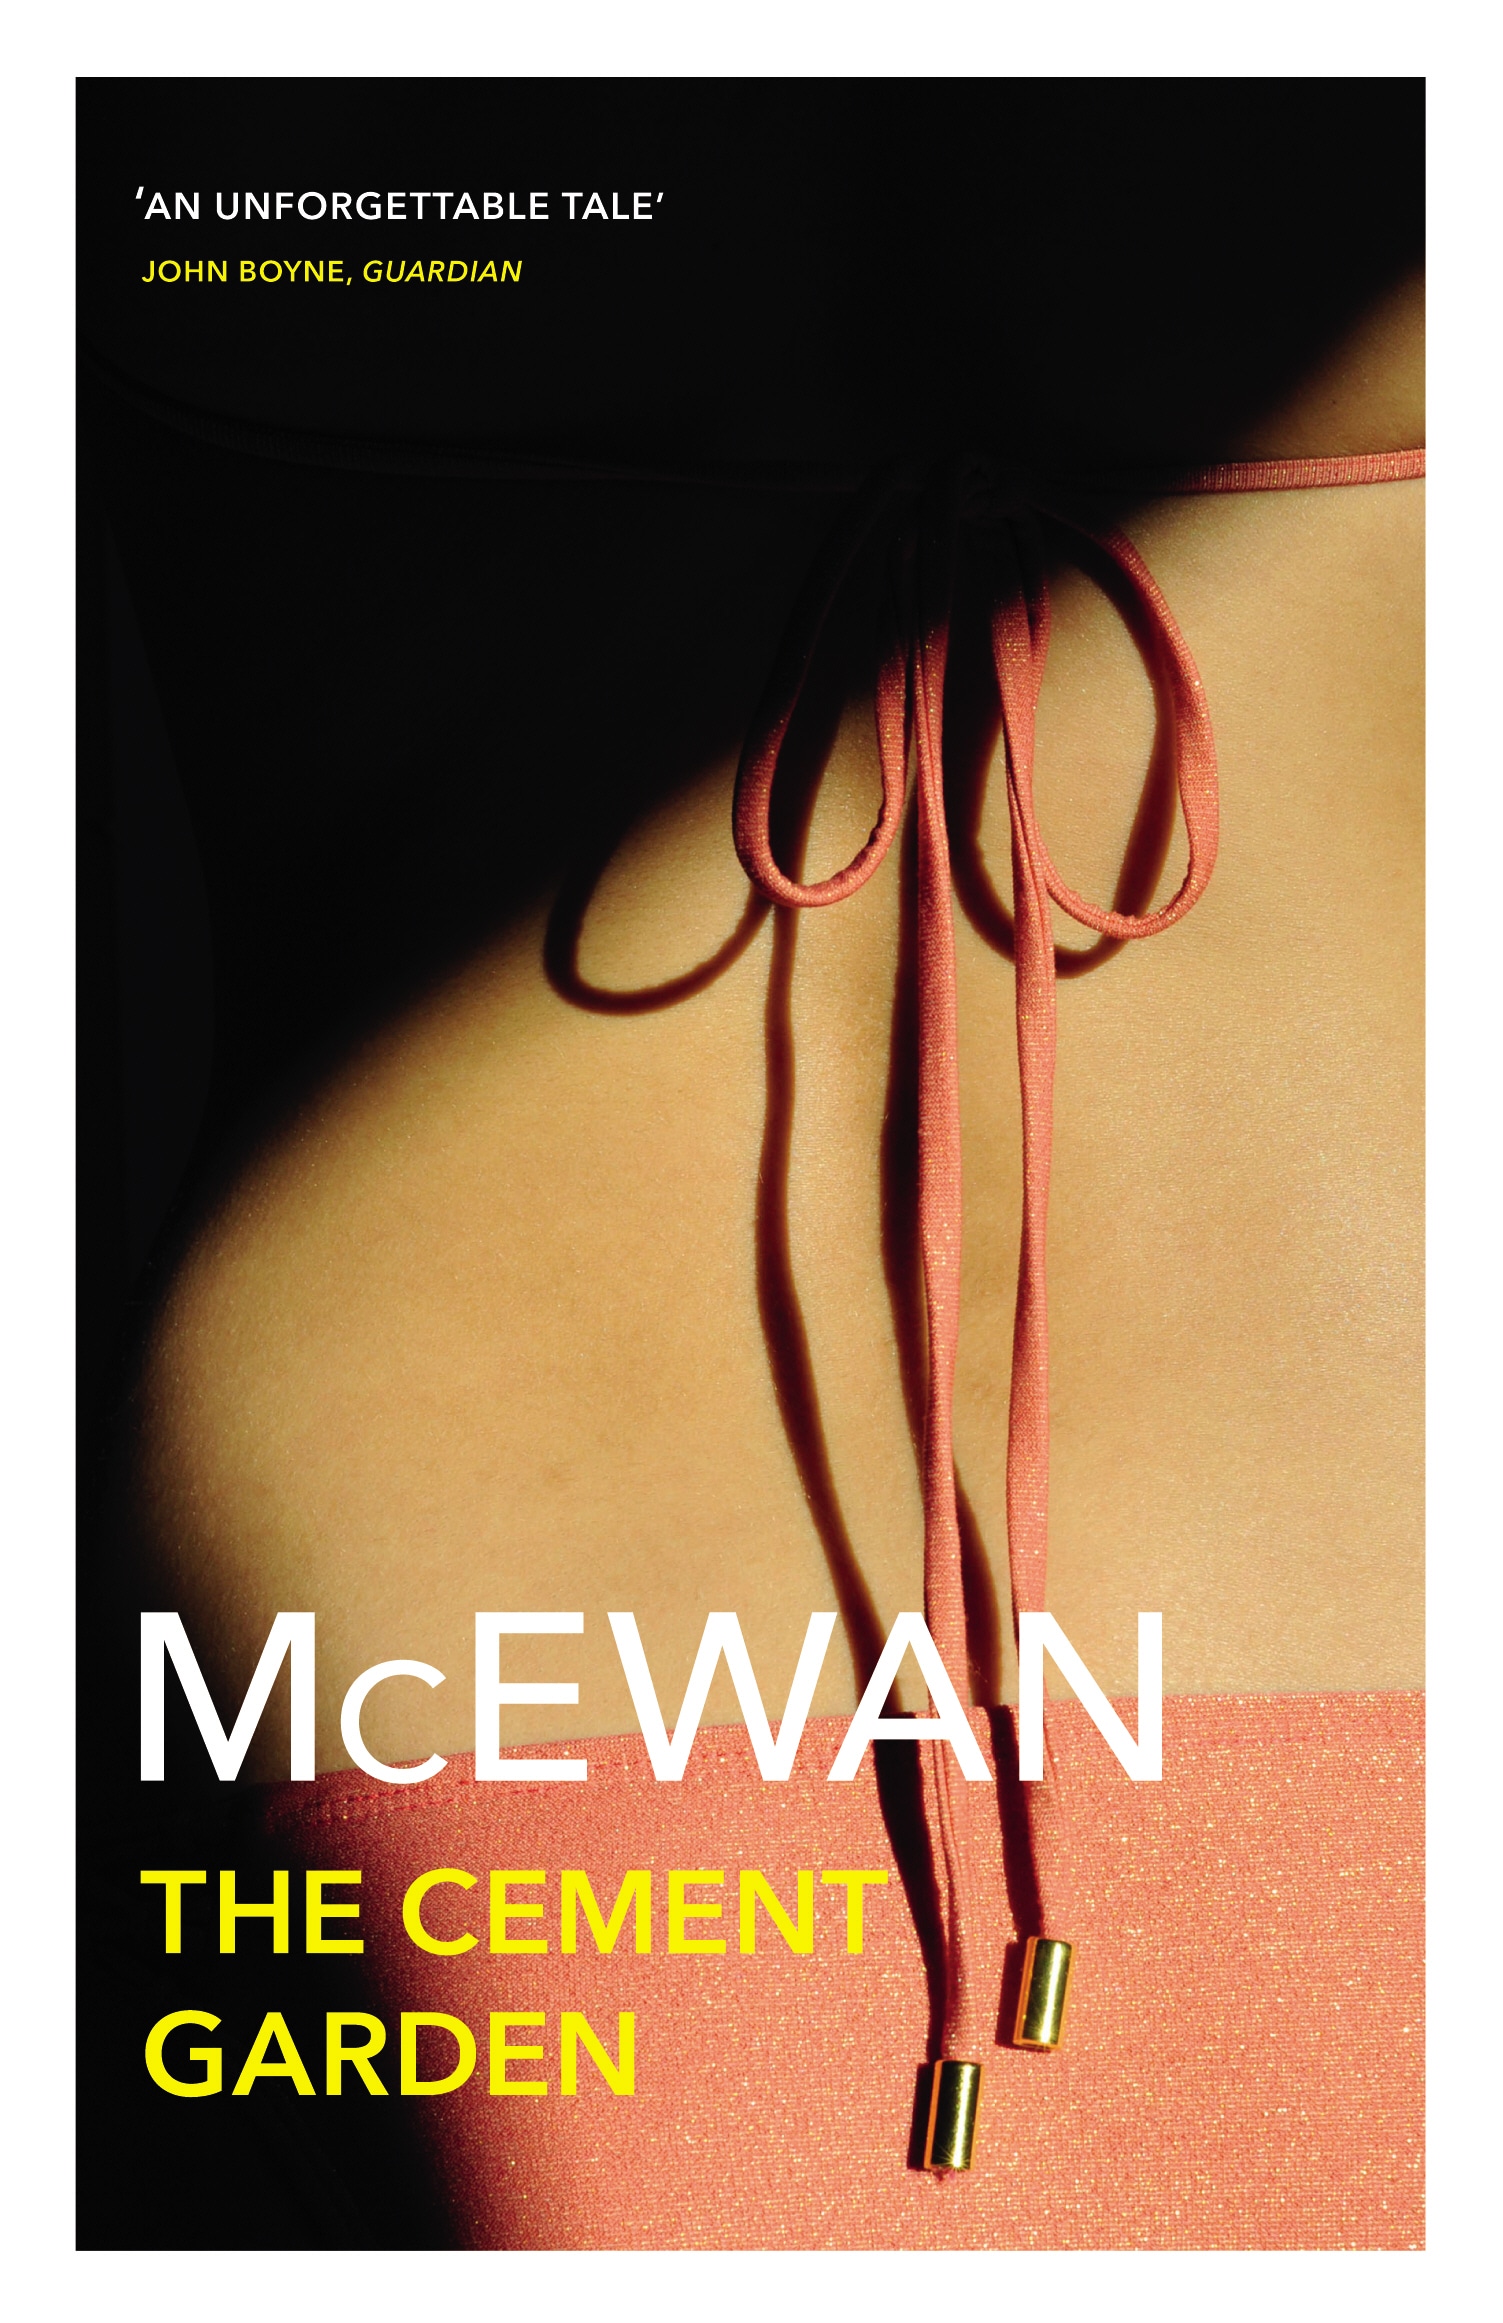 Book “The Cement Garden” by Ian McEwan — June 5, 1997